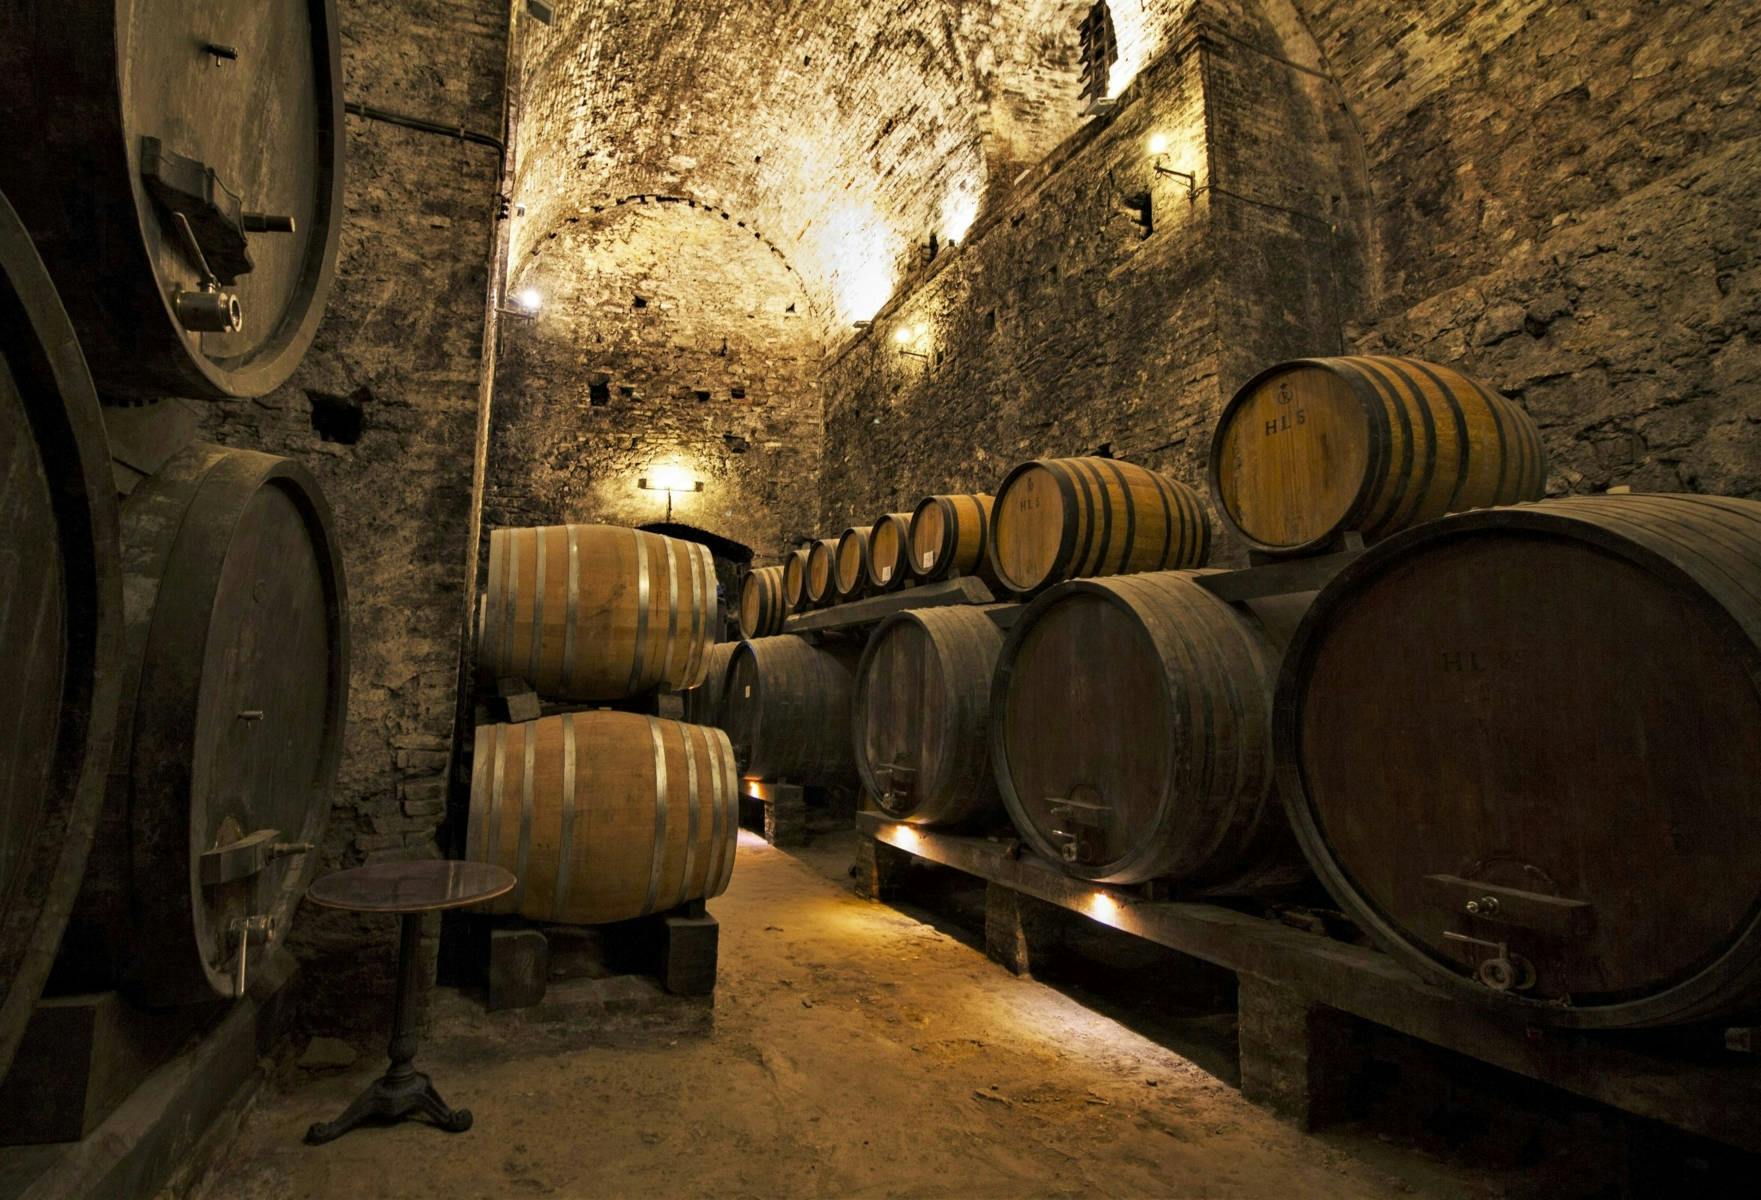 Visita guiada a Montepulciano e Montalcino com degustação de vinhos